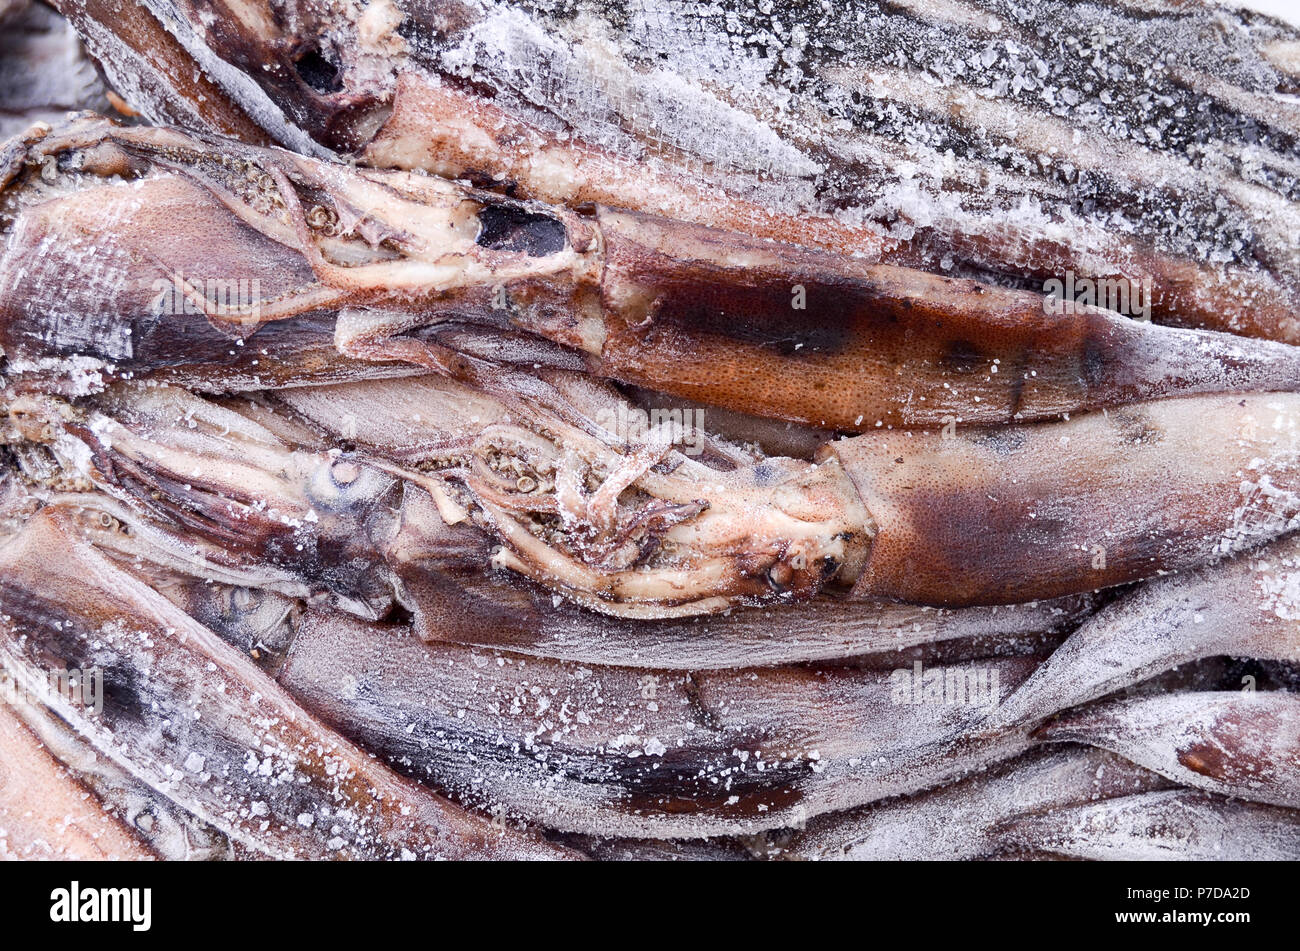 Merluza Congelada De Los Pescados Imagen de archivo - Imagen de calamar,  sabroso: 43257147